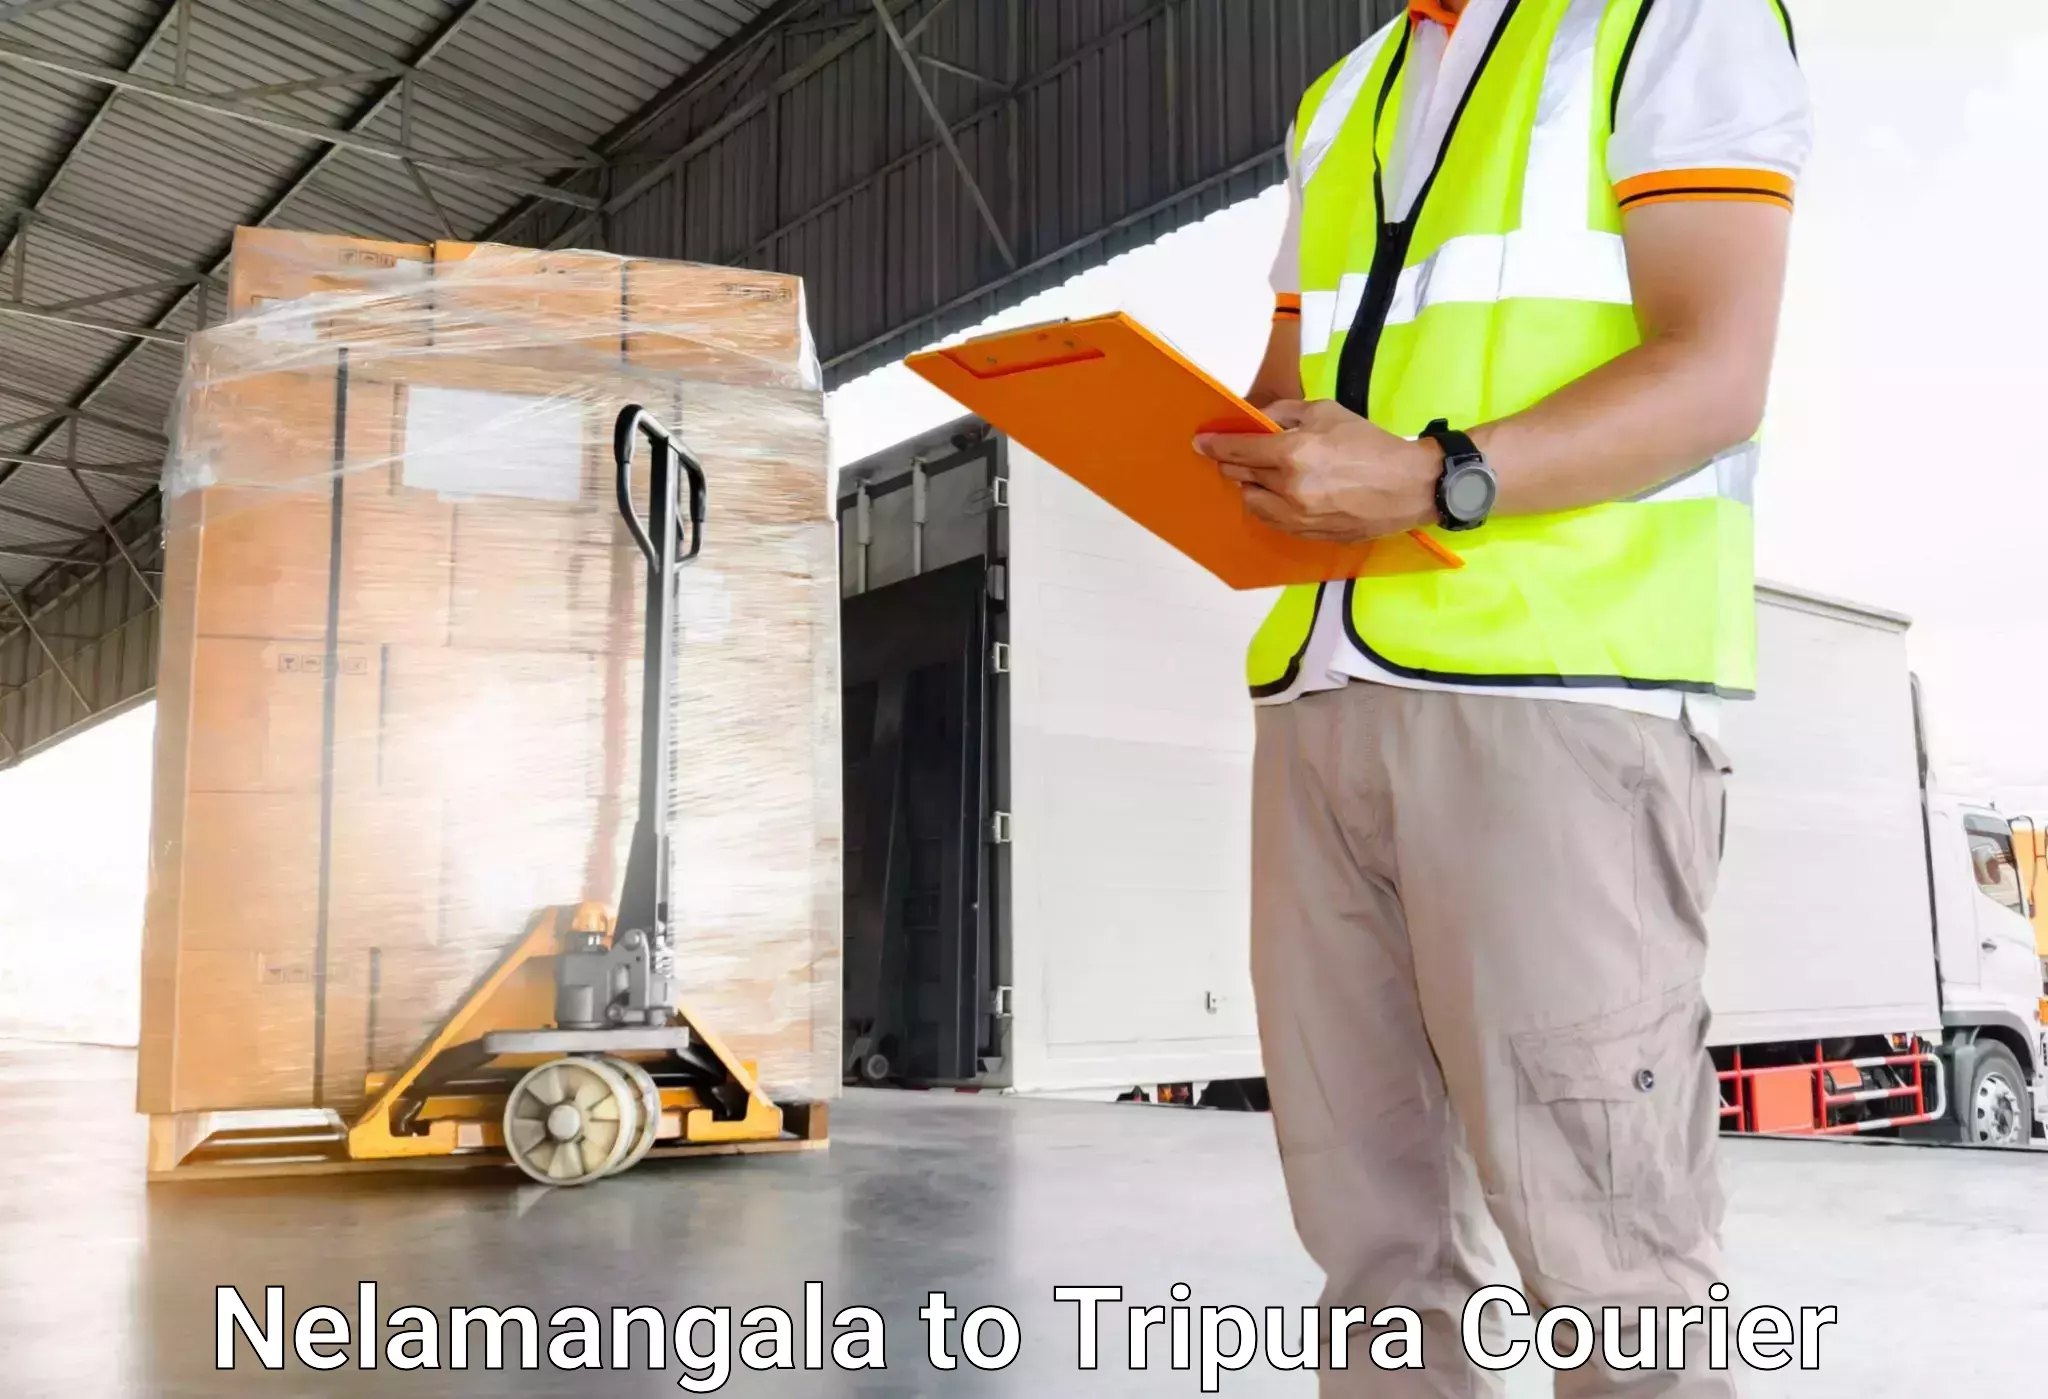 Luggage transport service Nelamangala to Tripura